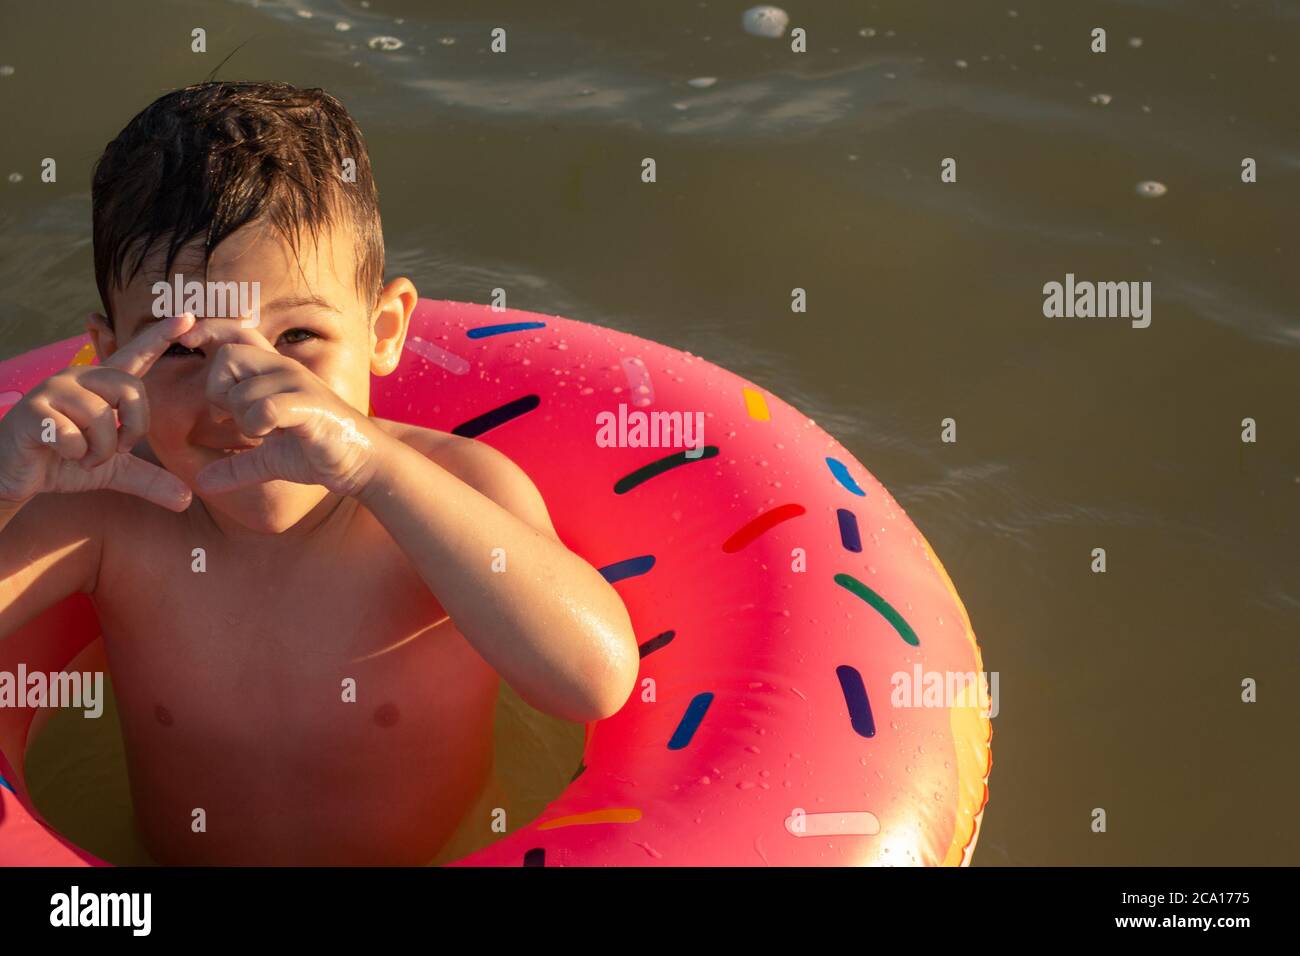 Un ragazzo di 5 anni nuota in mare con un cerchio gonfiabile a forma di ciambella e racconta che grande medusa ha appena visto in mare. Foto Stock